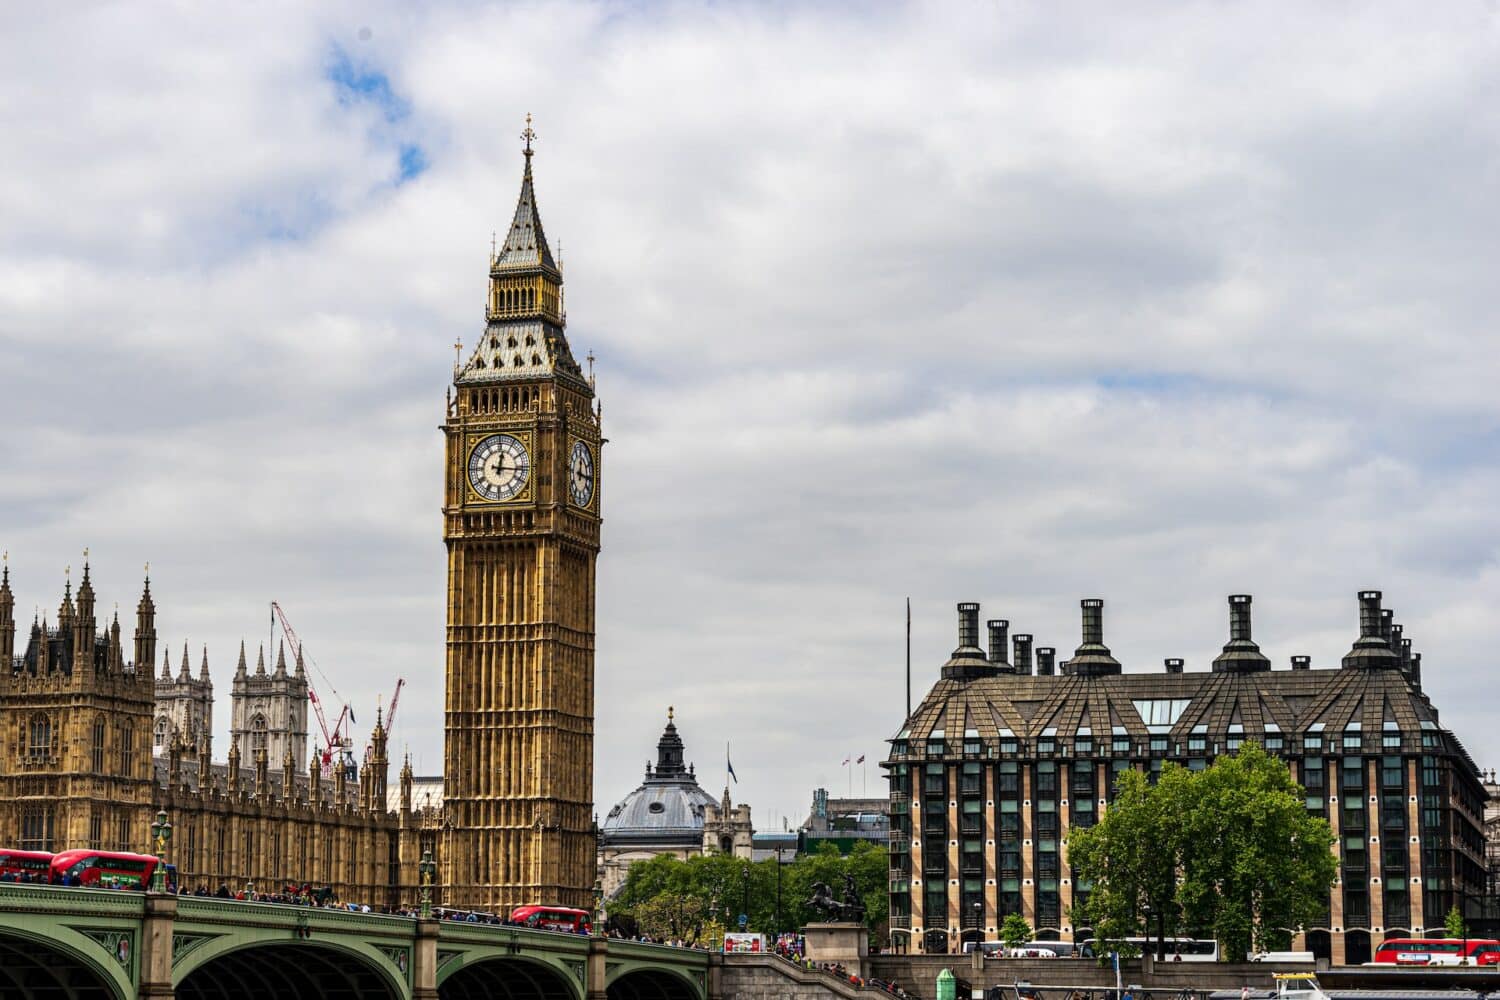 Prédio histórico do Palácio de Westminster e a torre do relógio, há uma ponte na frente cortando o rio Tâmisa, para representar hotéis perto do Big Ben em Londres